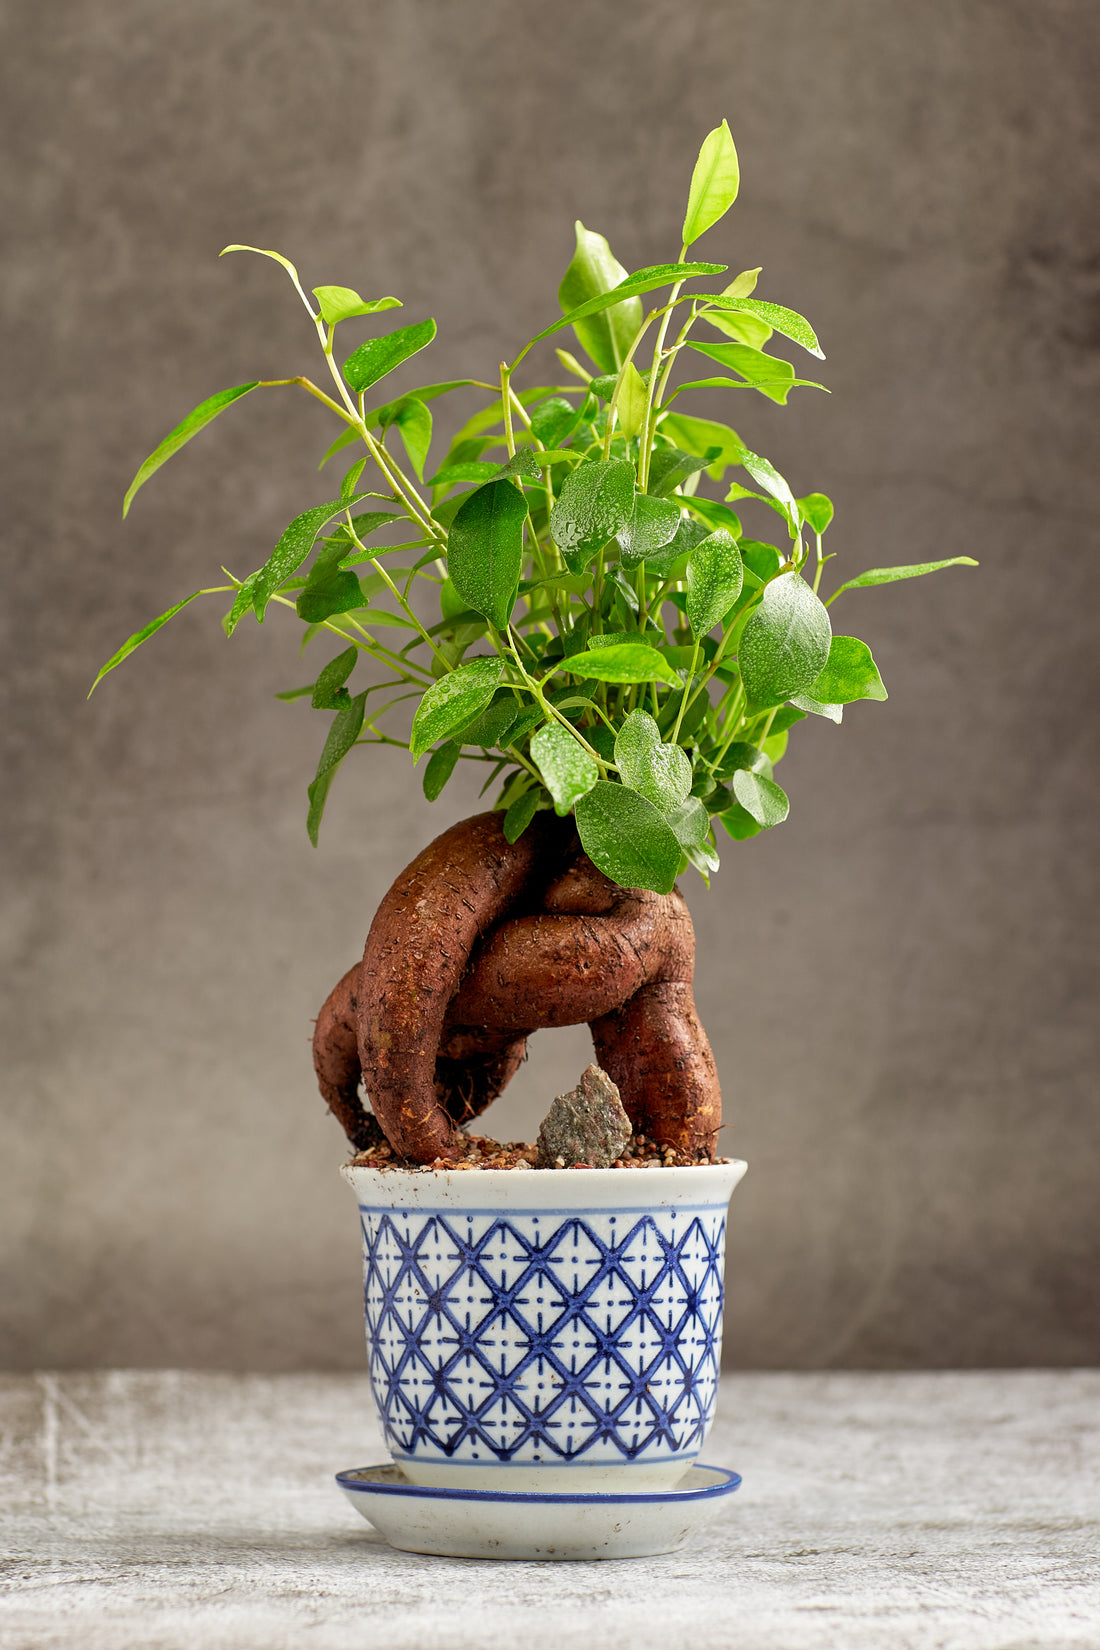 Ginseng Bonsai Tree in a Ceramic Pot